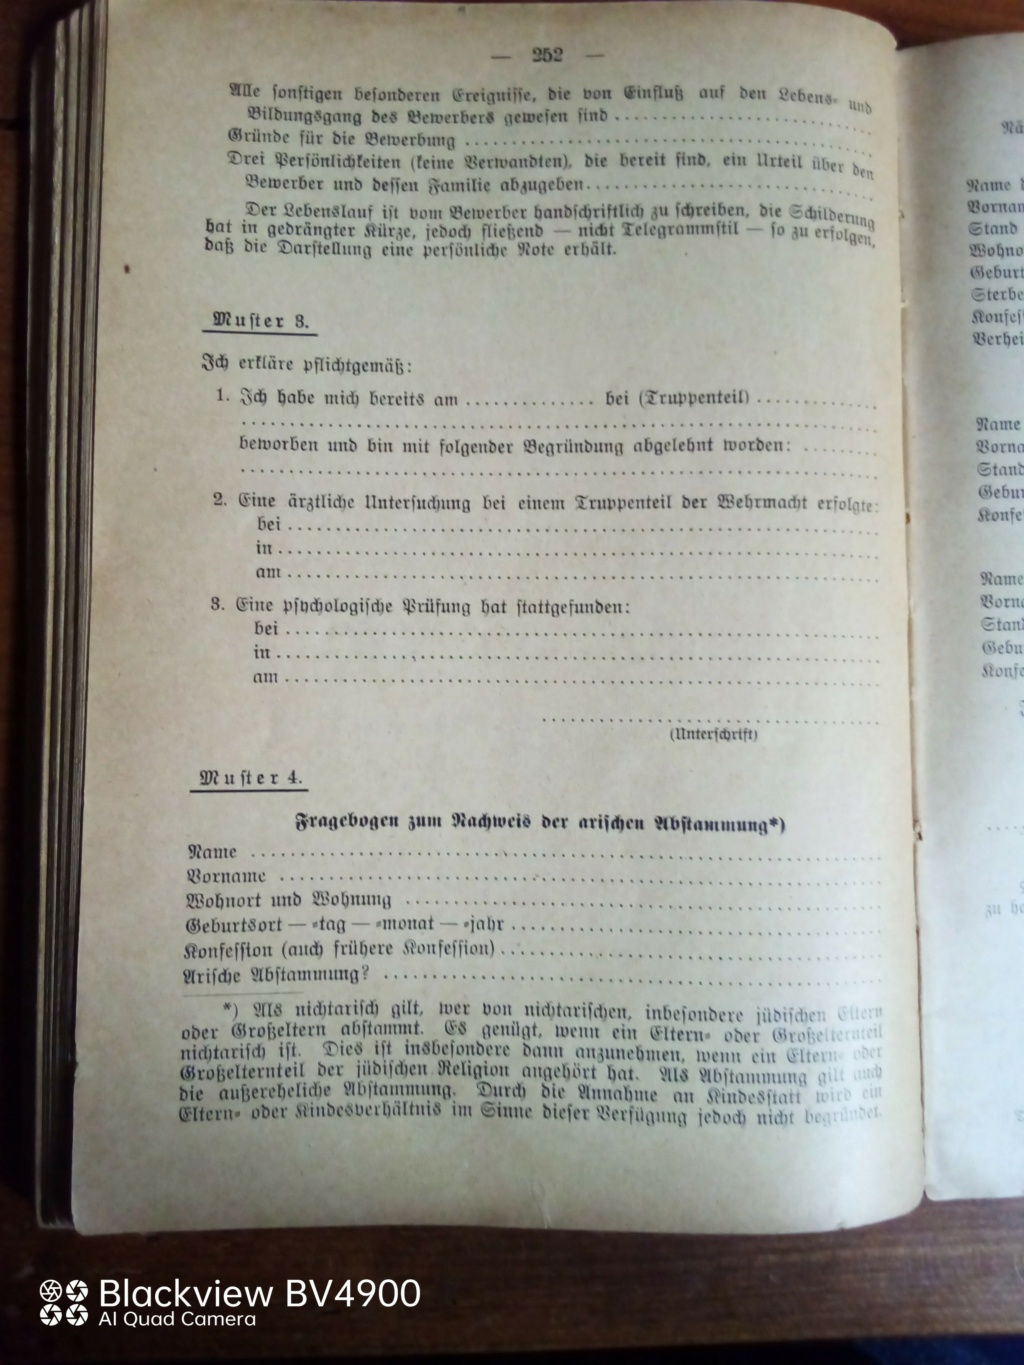 Handbucher der Luftwaffe - Page 5 Img_2325